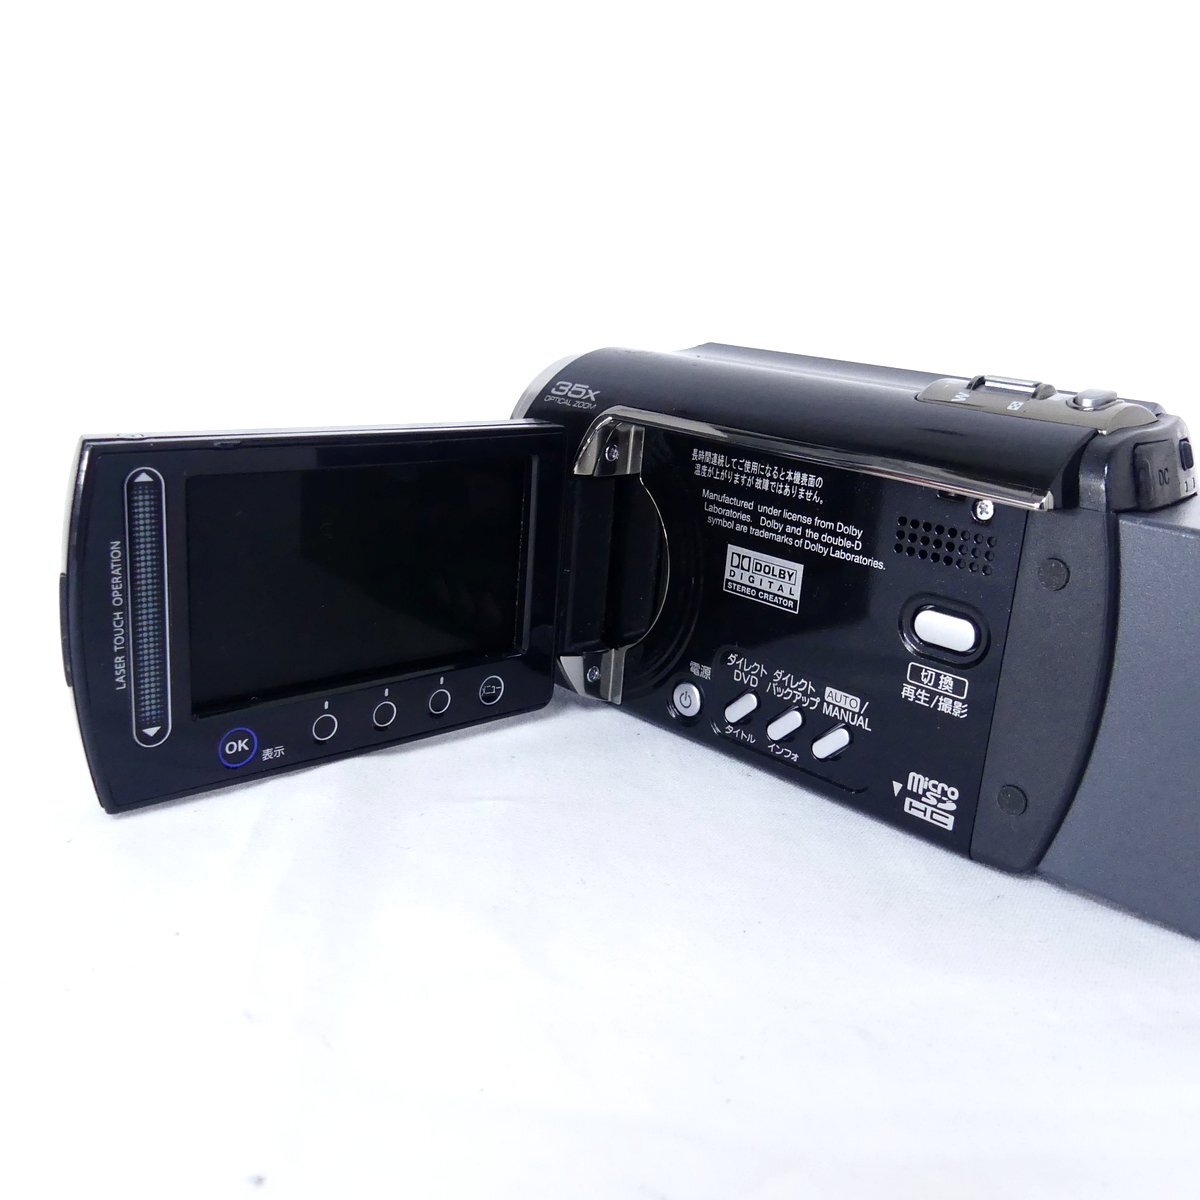 Victor ビクター Everio エブリオ GZ-MG262 ブラック 2008年製 ビデオカメラ 現状品 USED /2404C_画像5